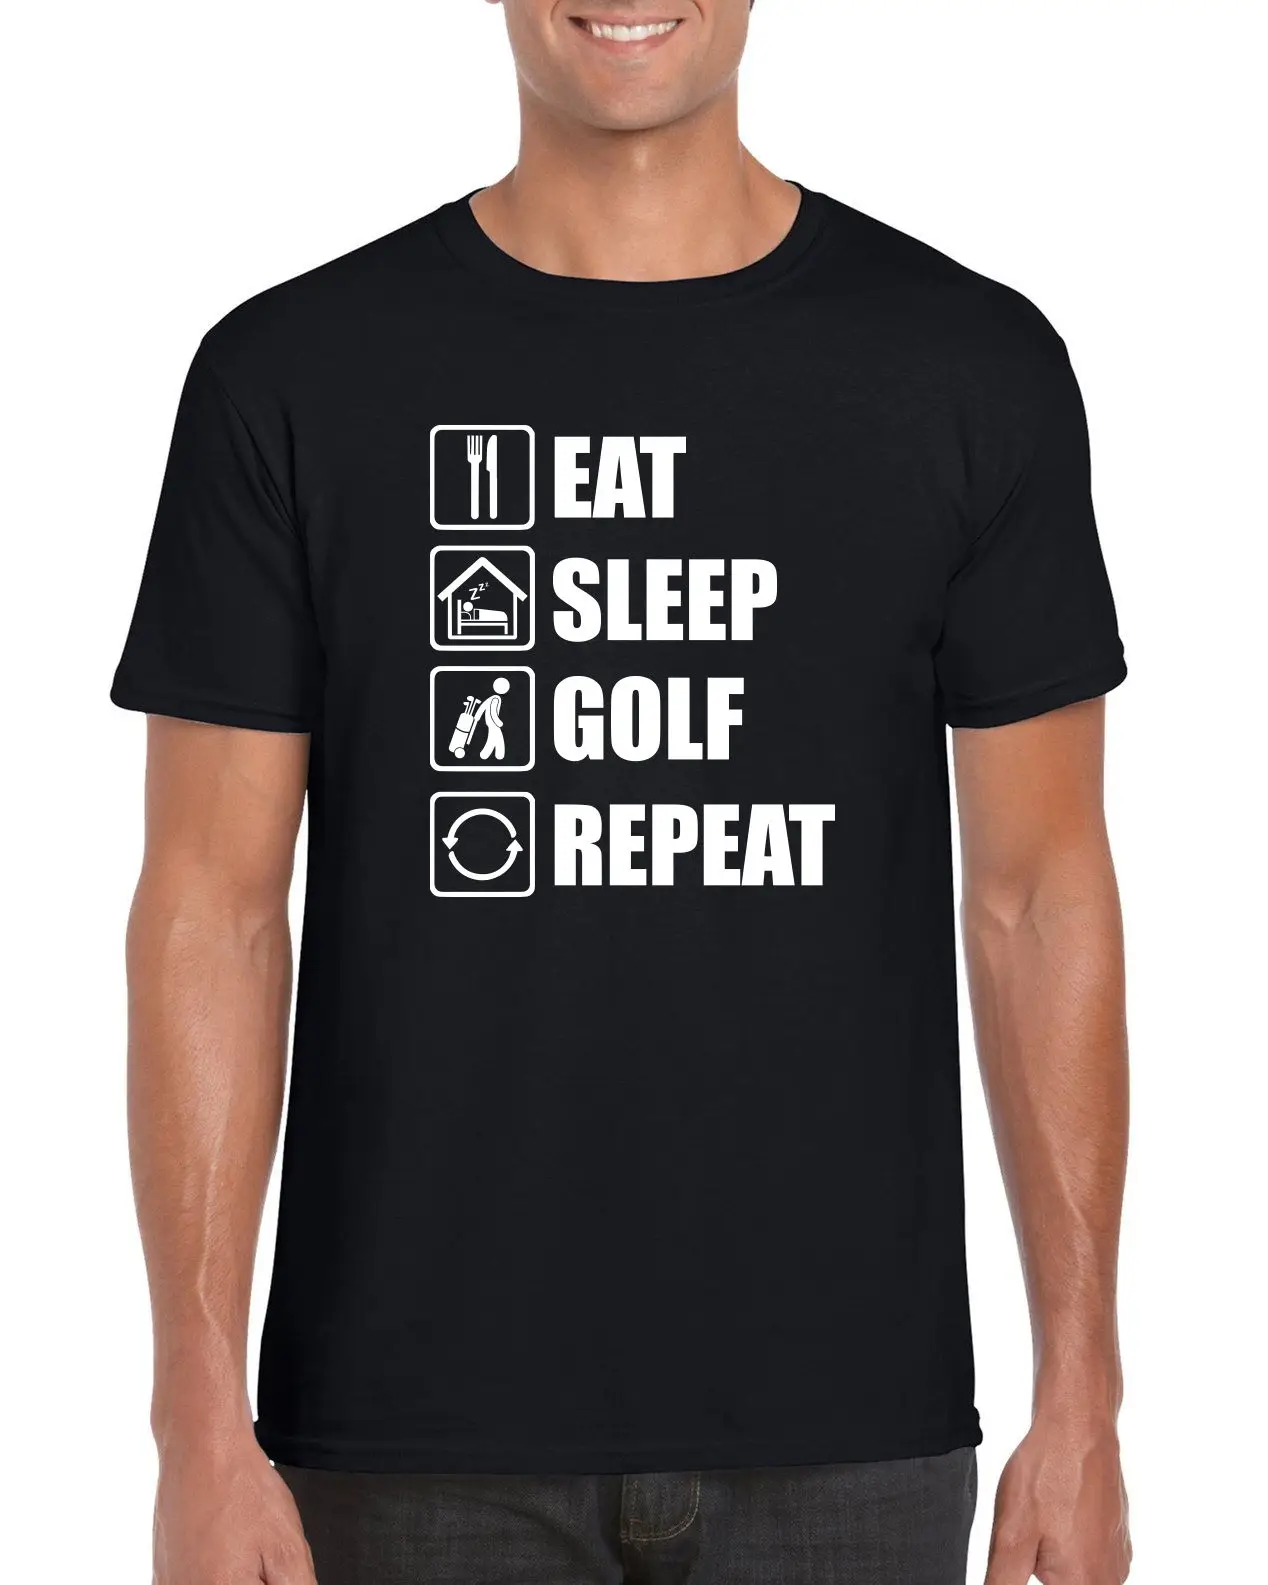 "Eat Sleep Golf Repeat" забавная Футболка Для Гольфа Новые футболки arrival повседневная Летняя Распродажа дешевых футболок